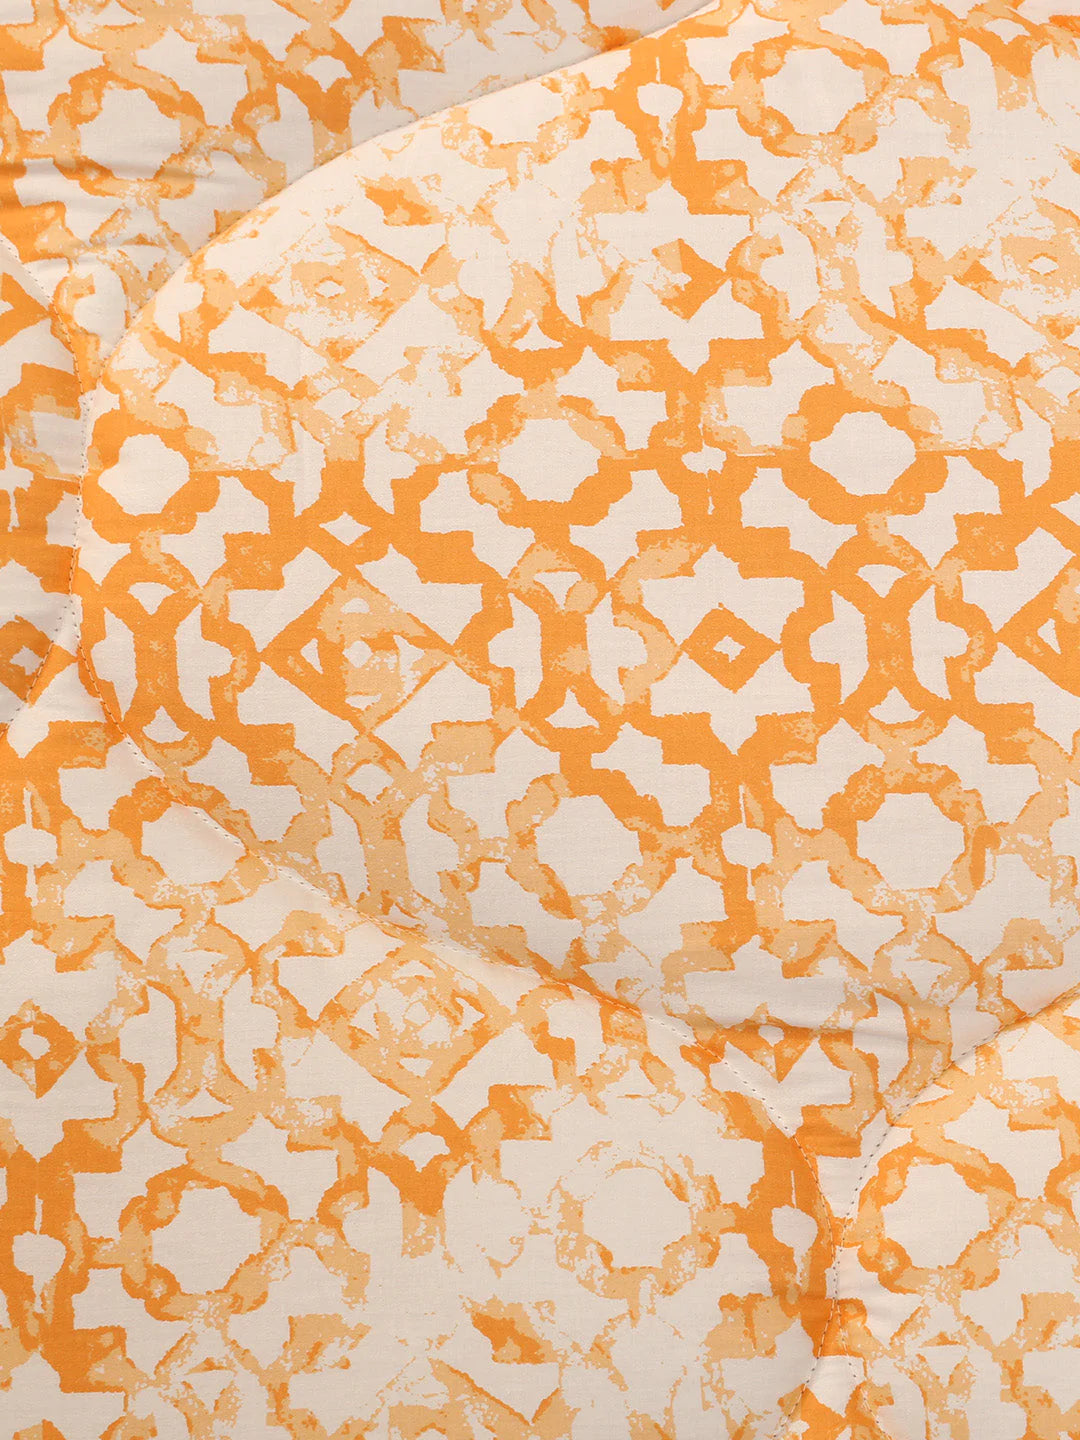 Jaal Orange Comforter